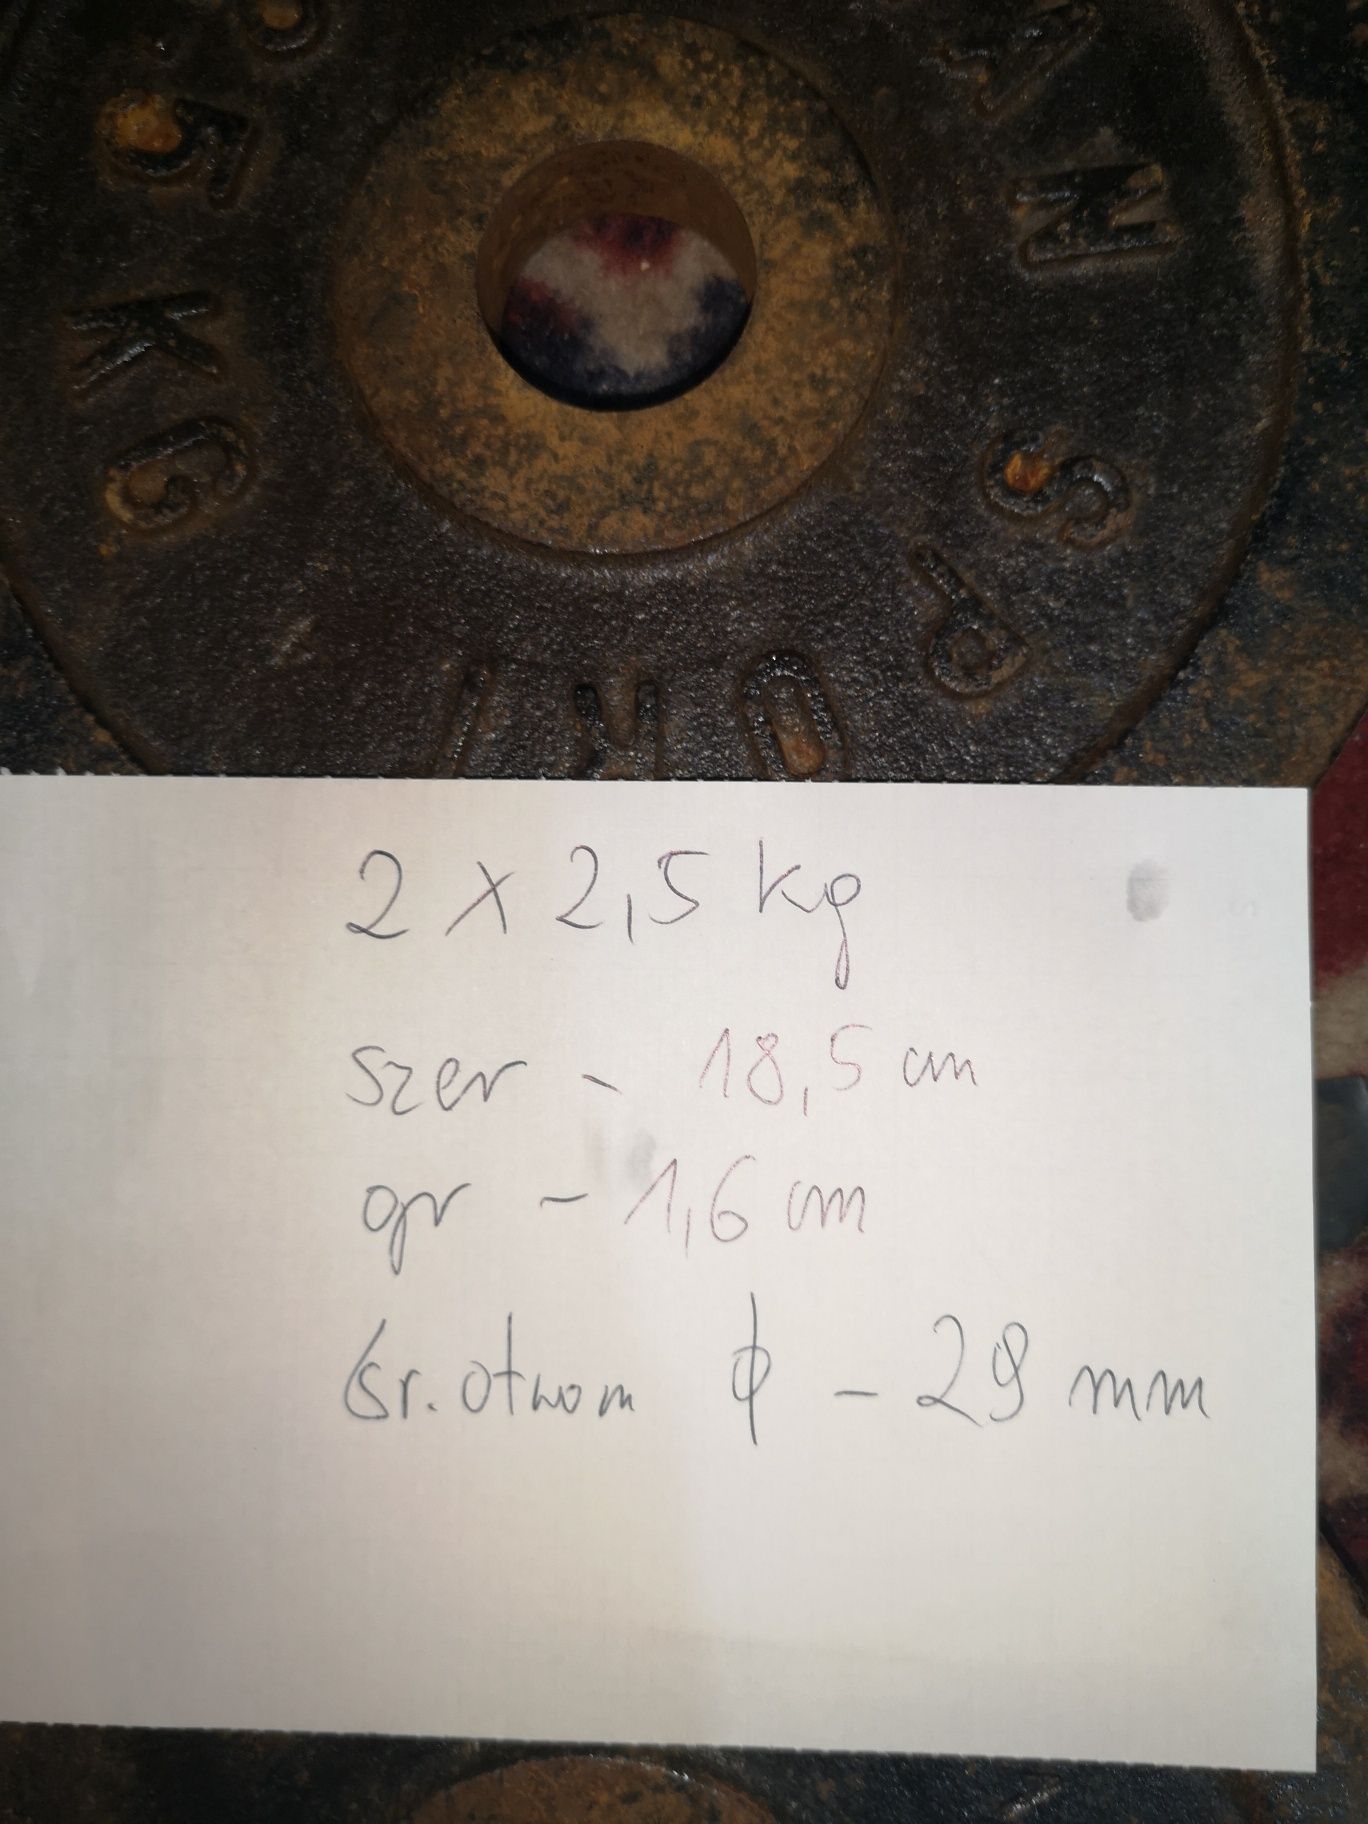 Obciążenie żeliwne 2x2.5 kg